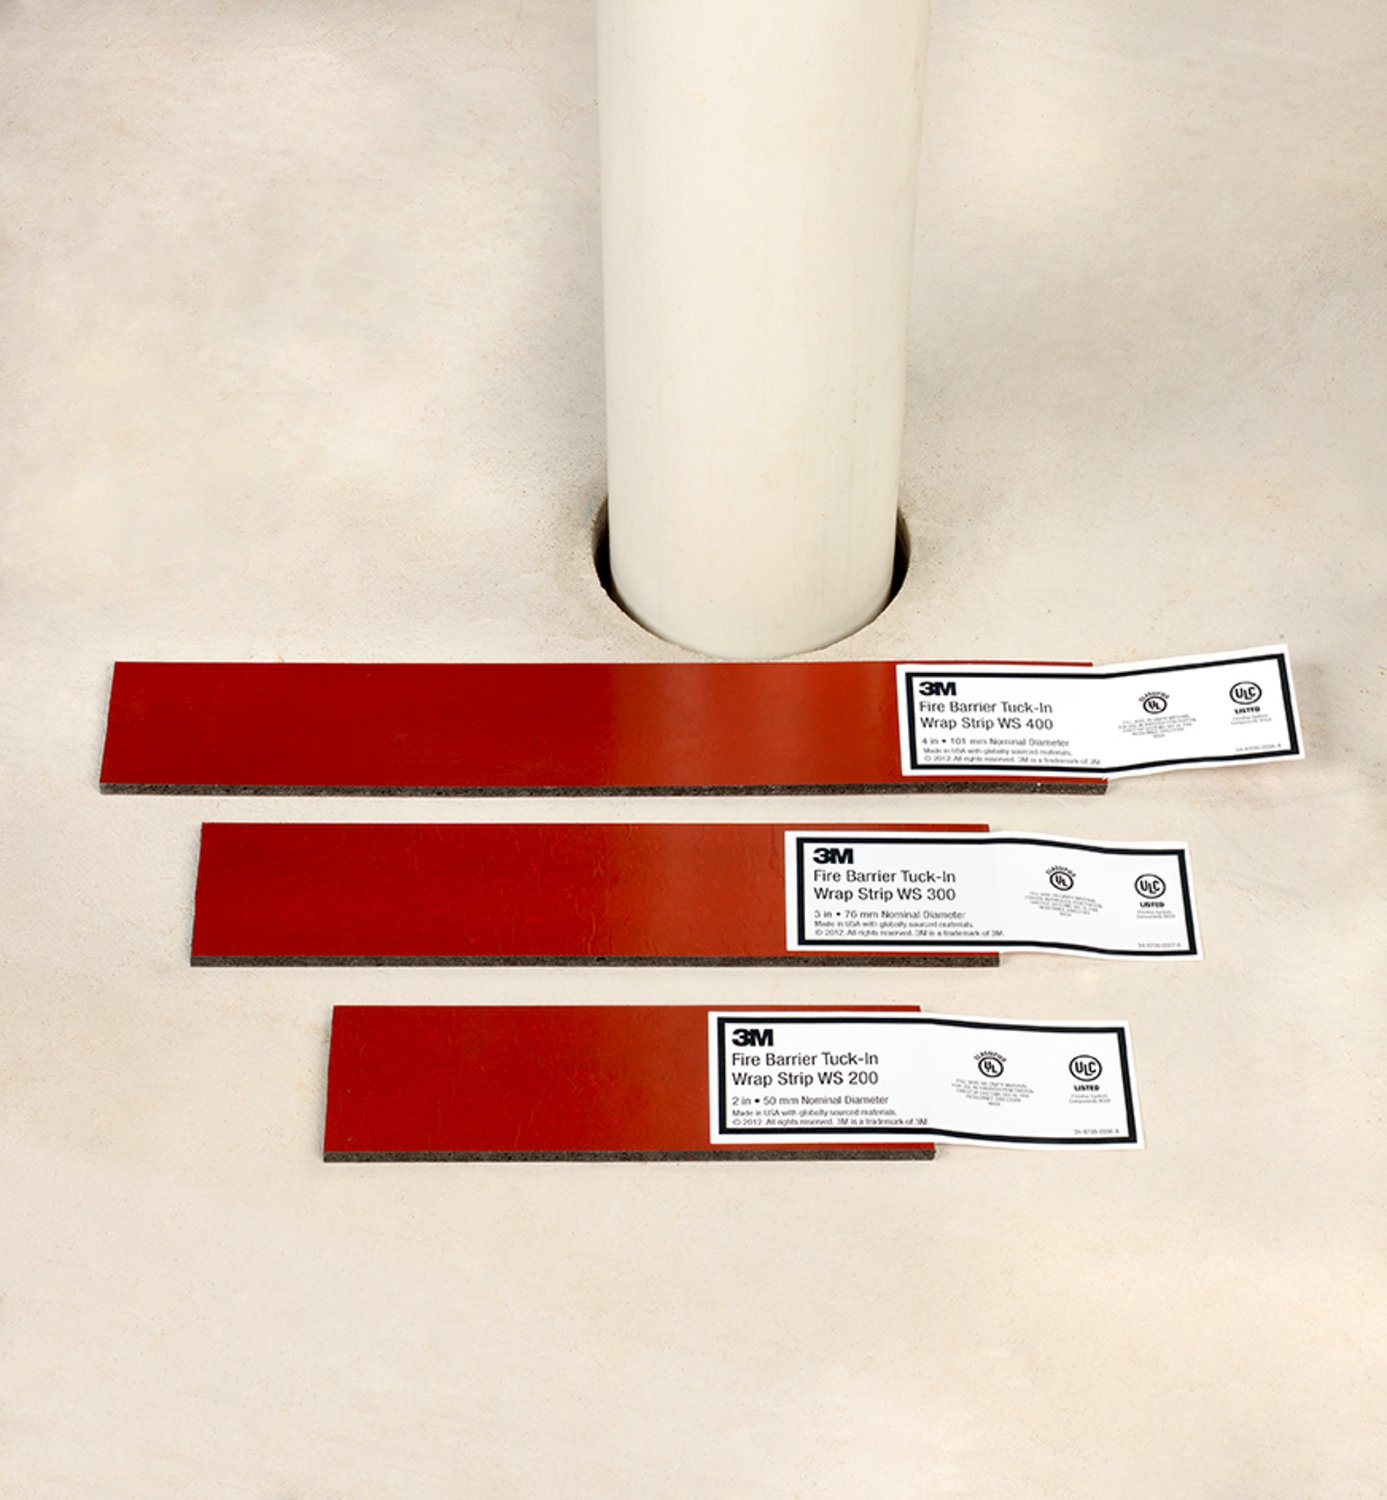 7100262629 - 3M Fire Barrier Tuck-In Wrap Strip Roll WS, 2.5 in x 8.2 ft, 6 Rolls/Case